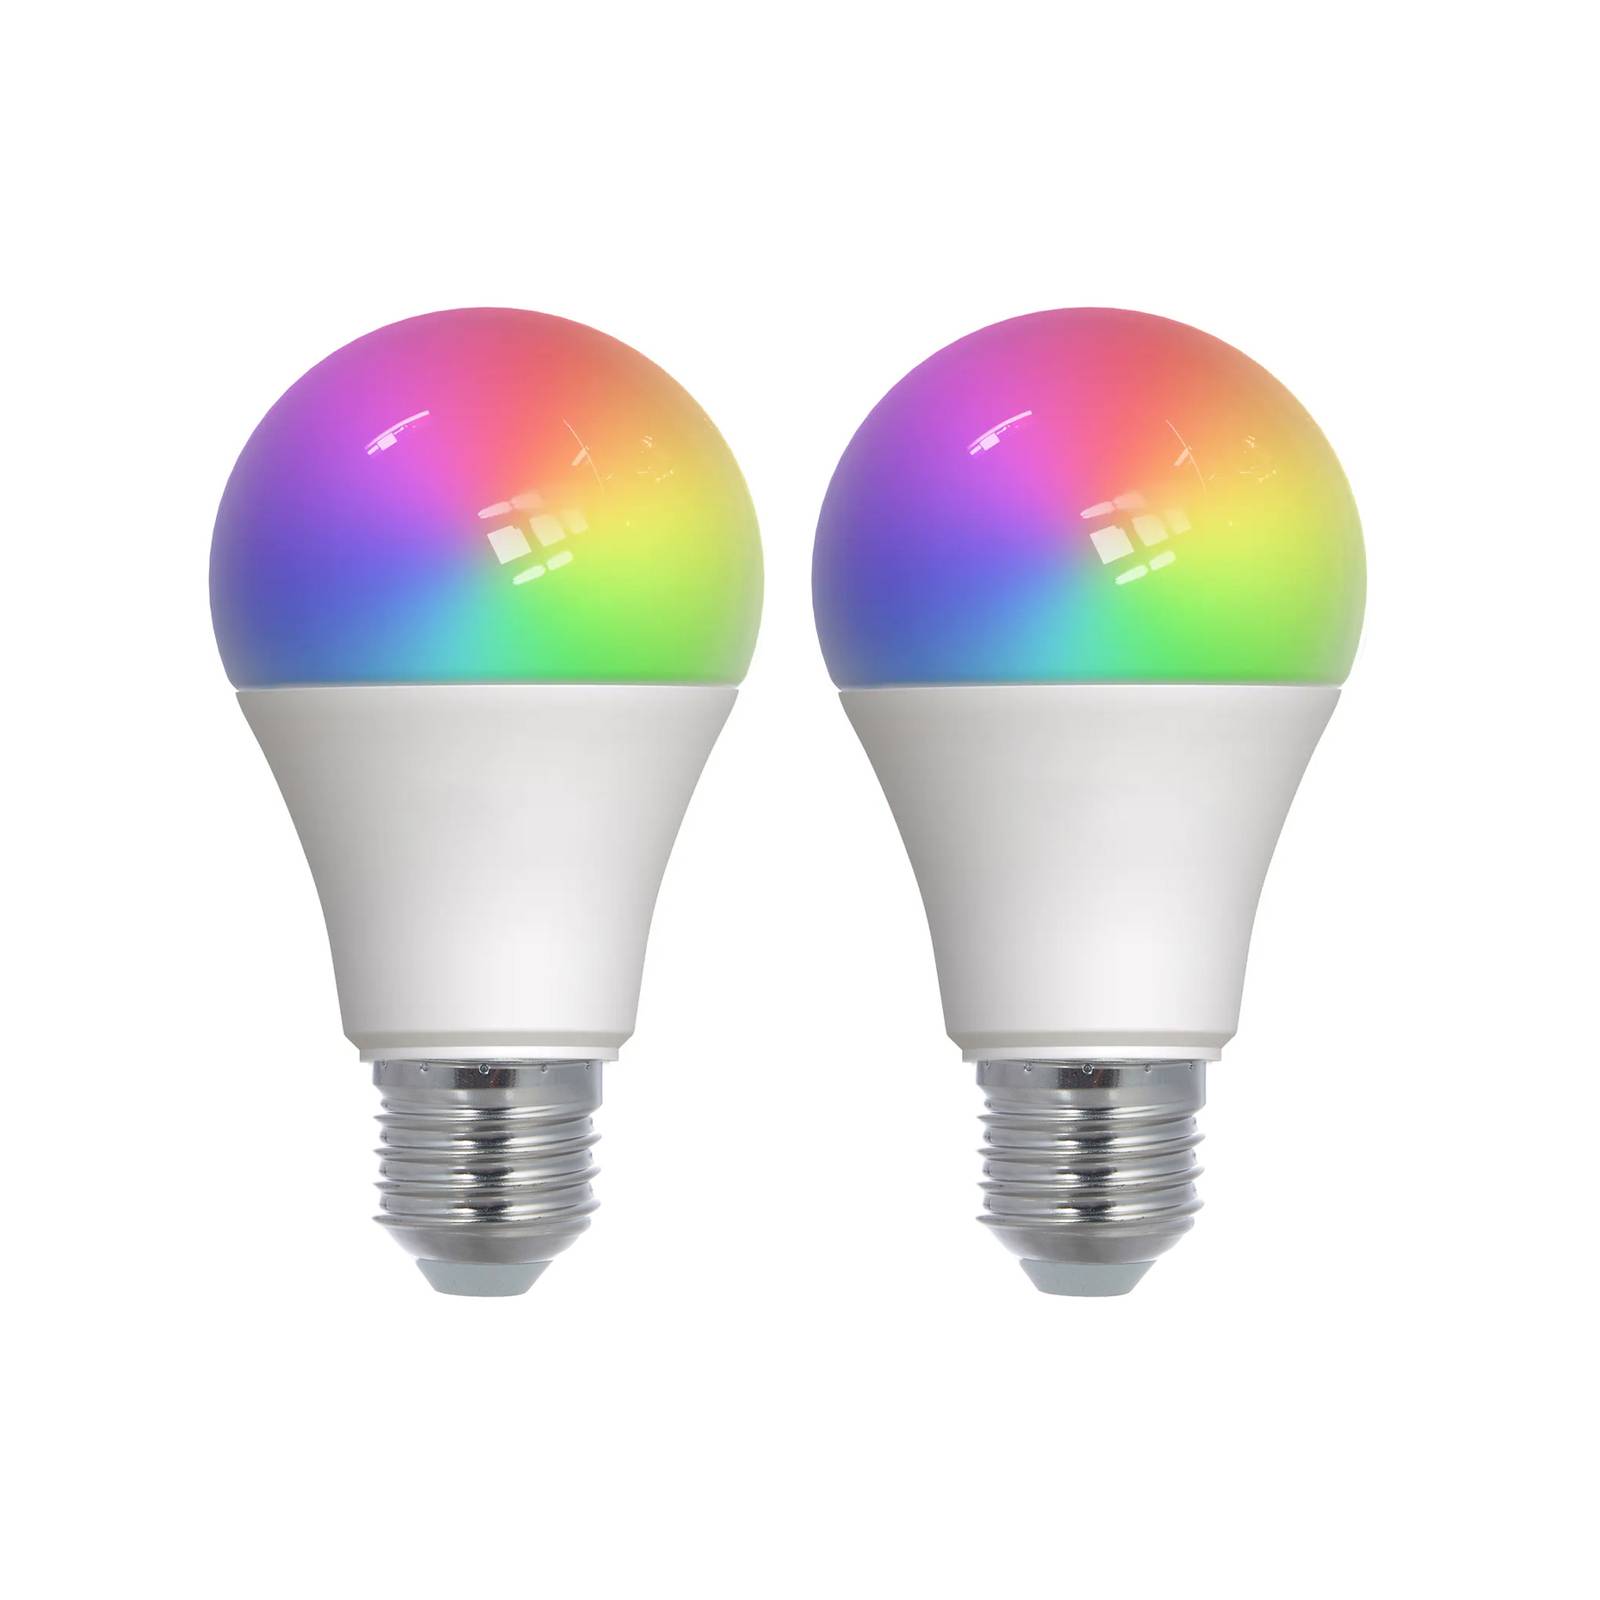 Prios LED E27 lamp A60 9W RGBW WLAN mat 2 per set